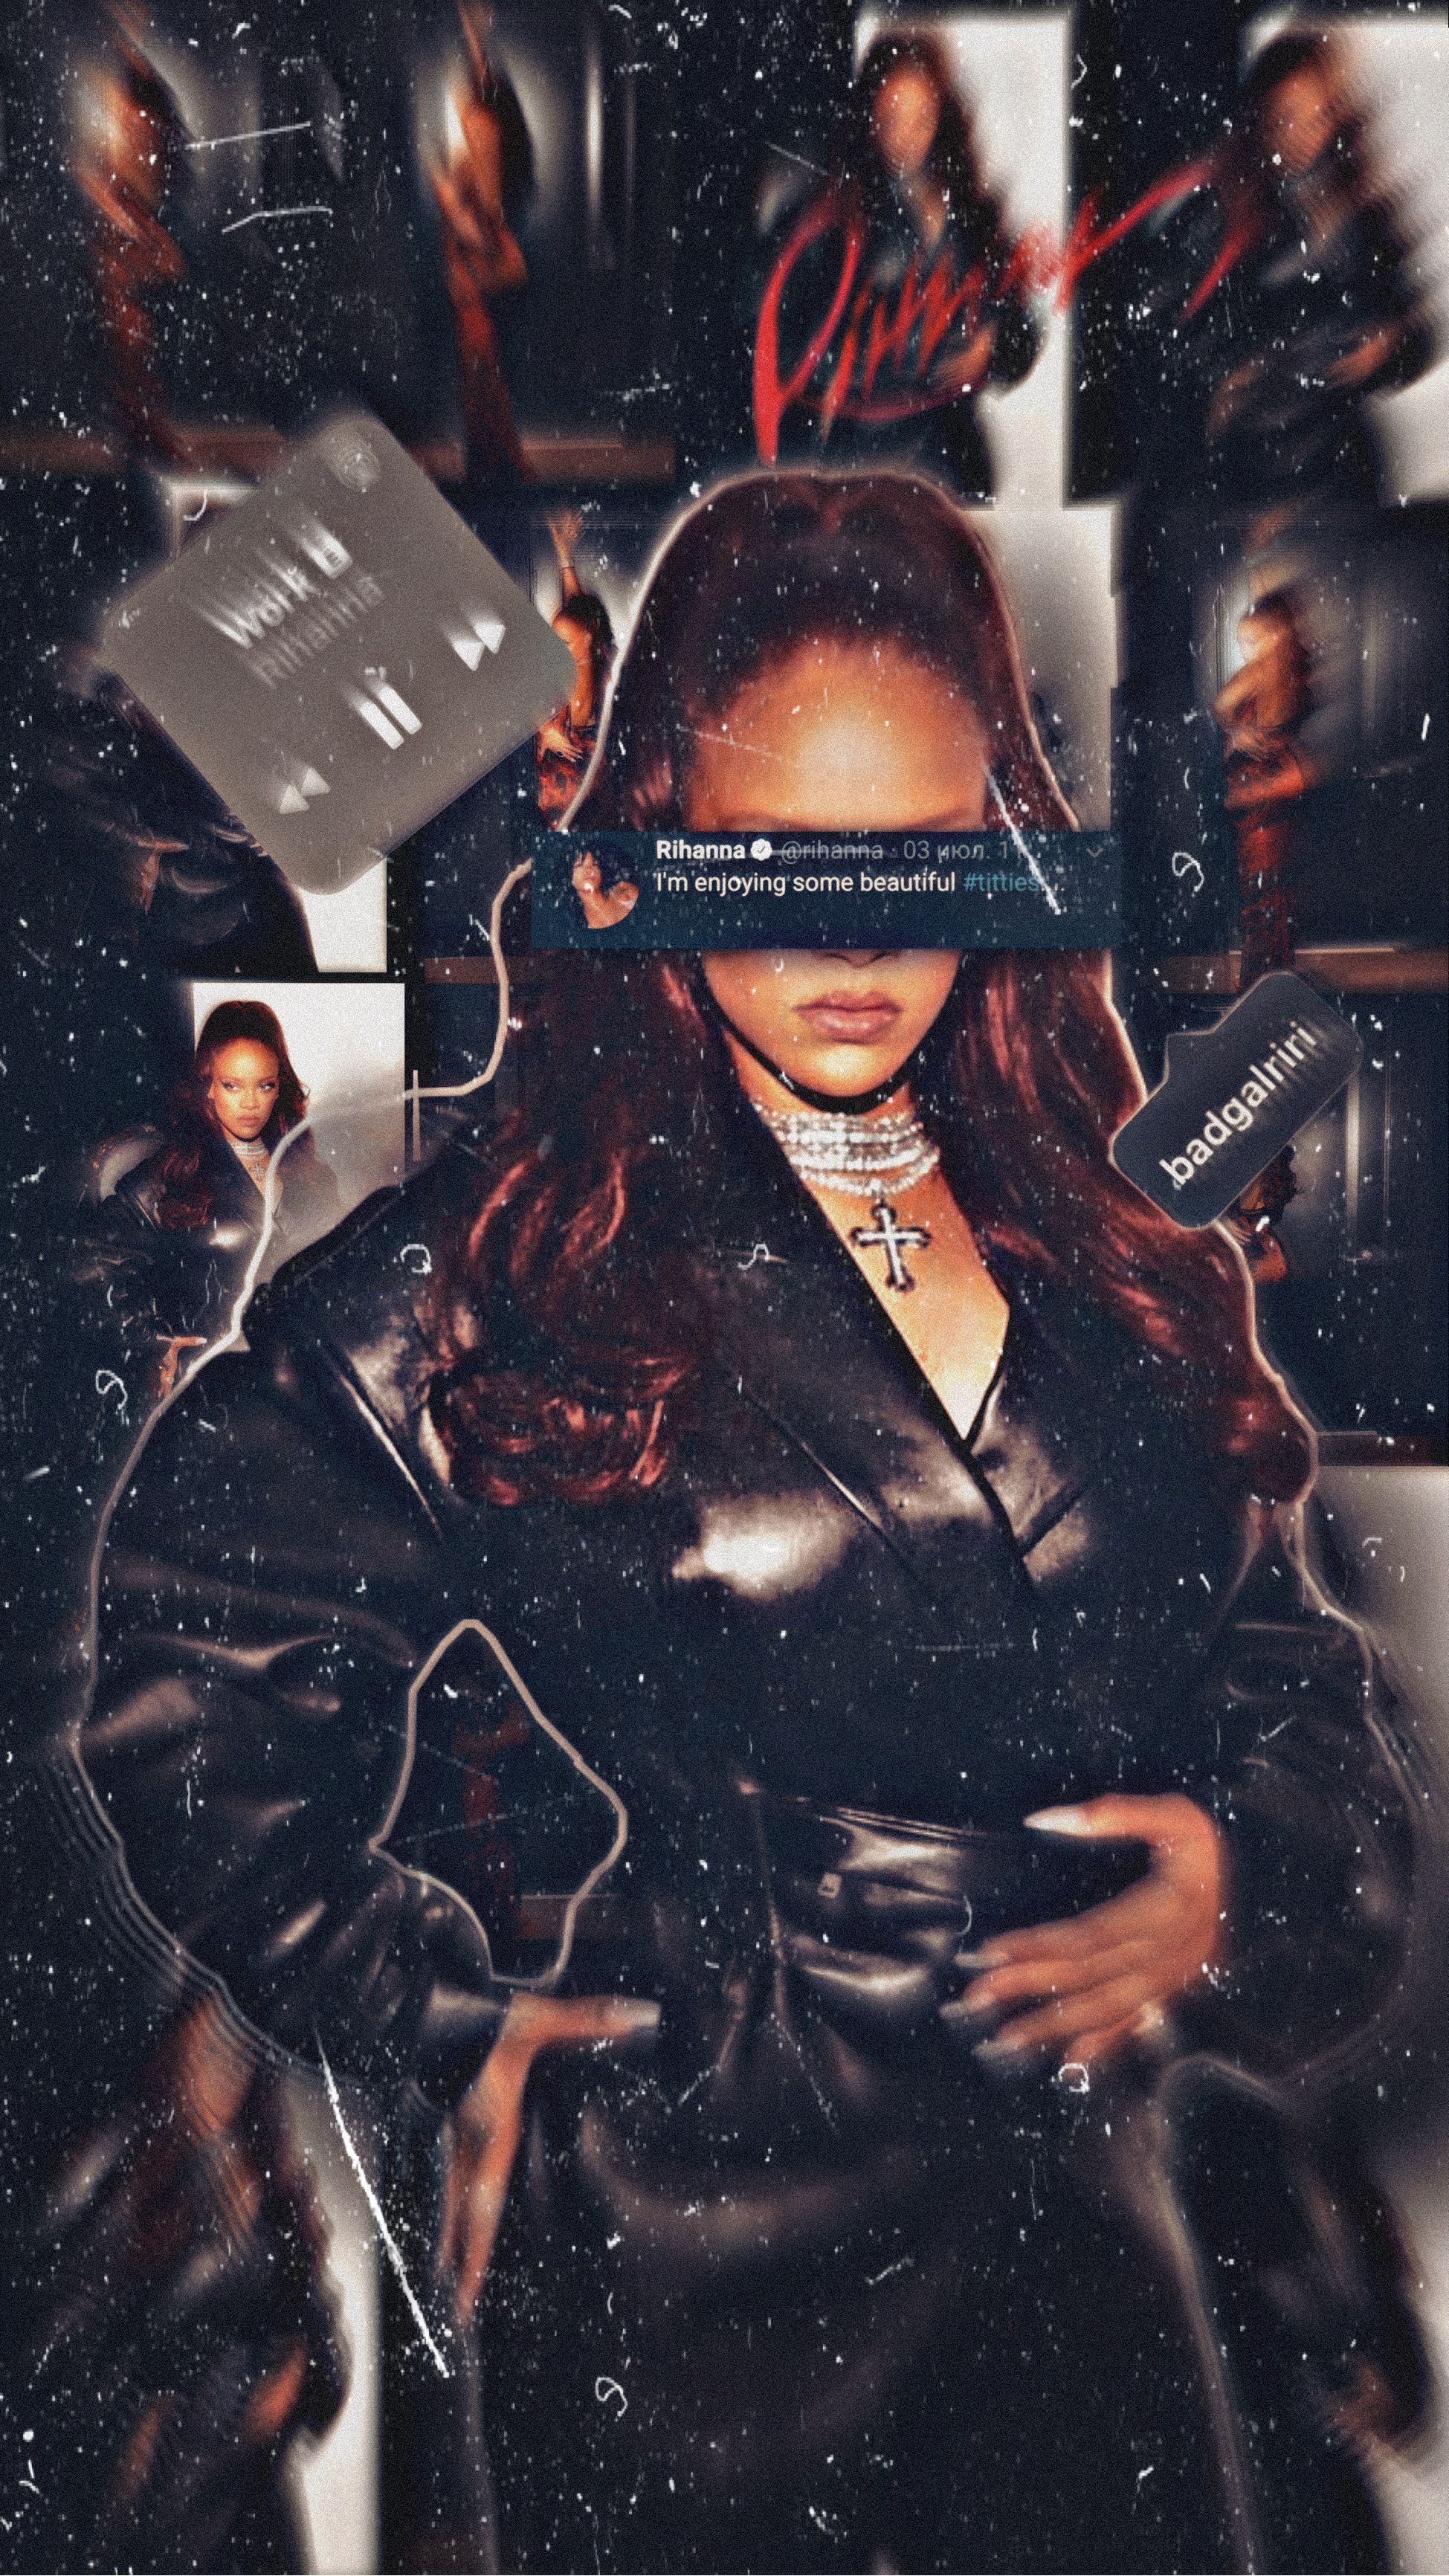 Rihanna wallpaper aesthetic. Rihanna, Black girl aesthetic, Black girl